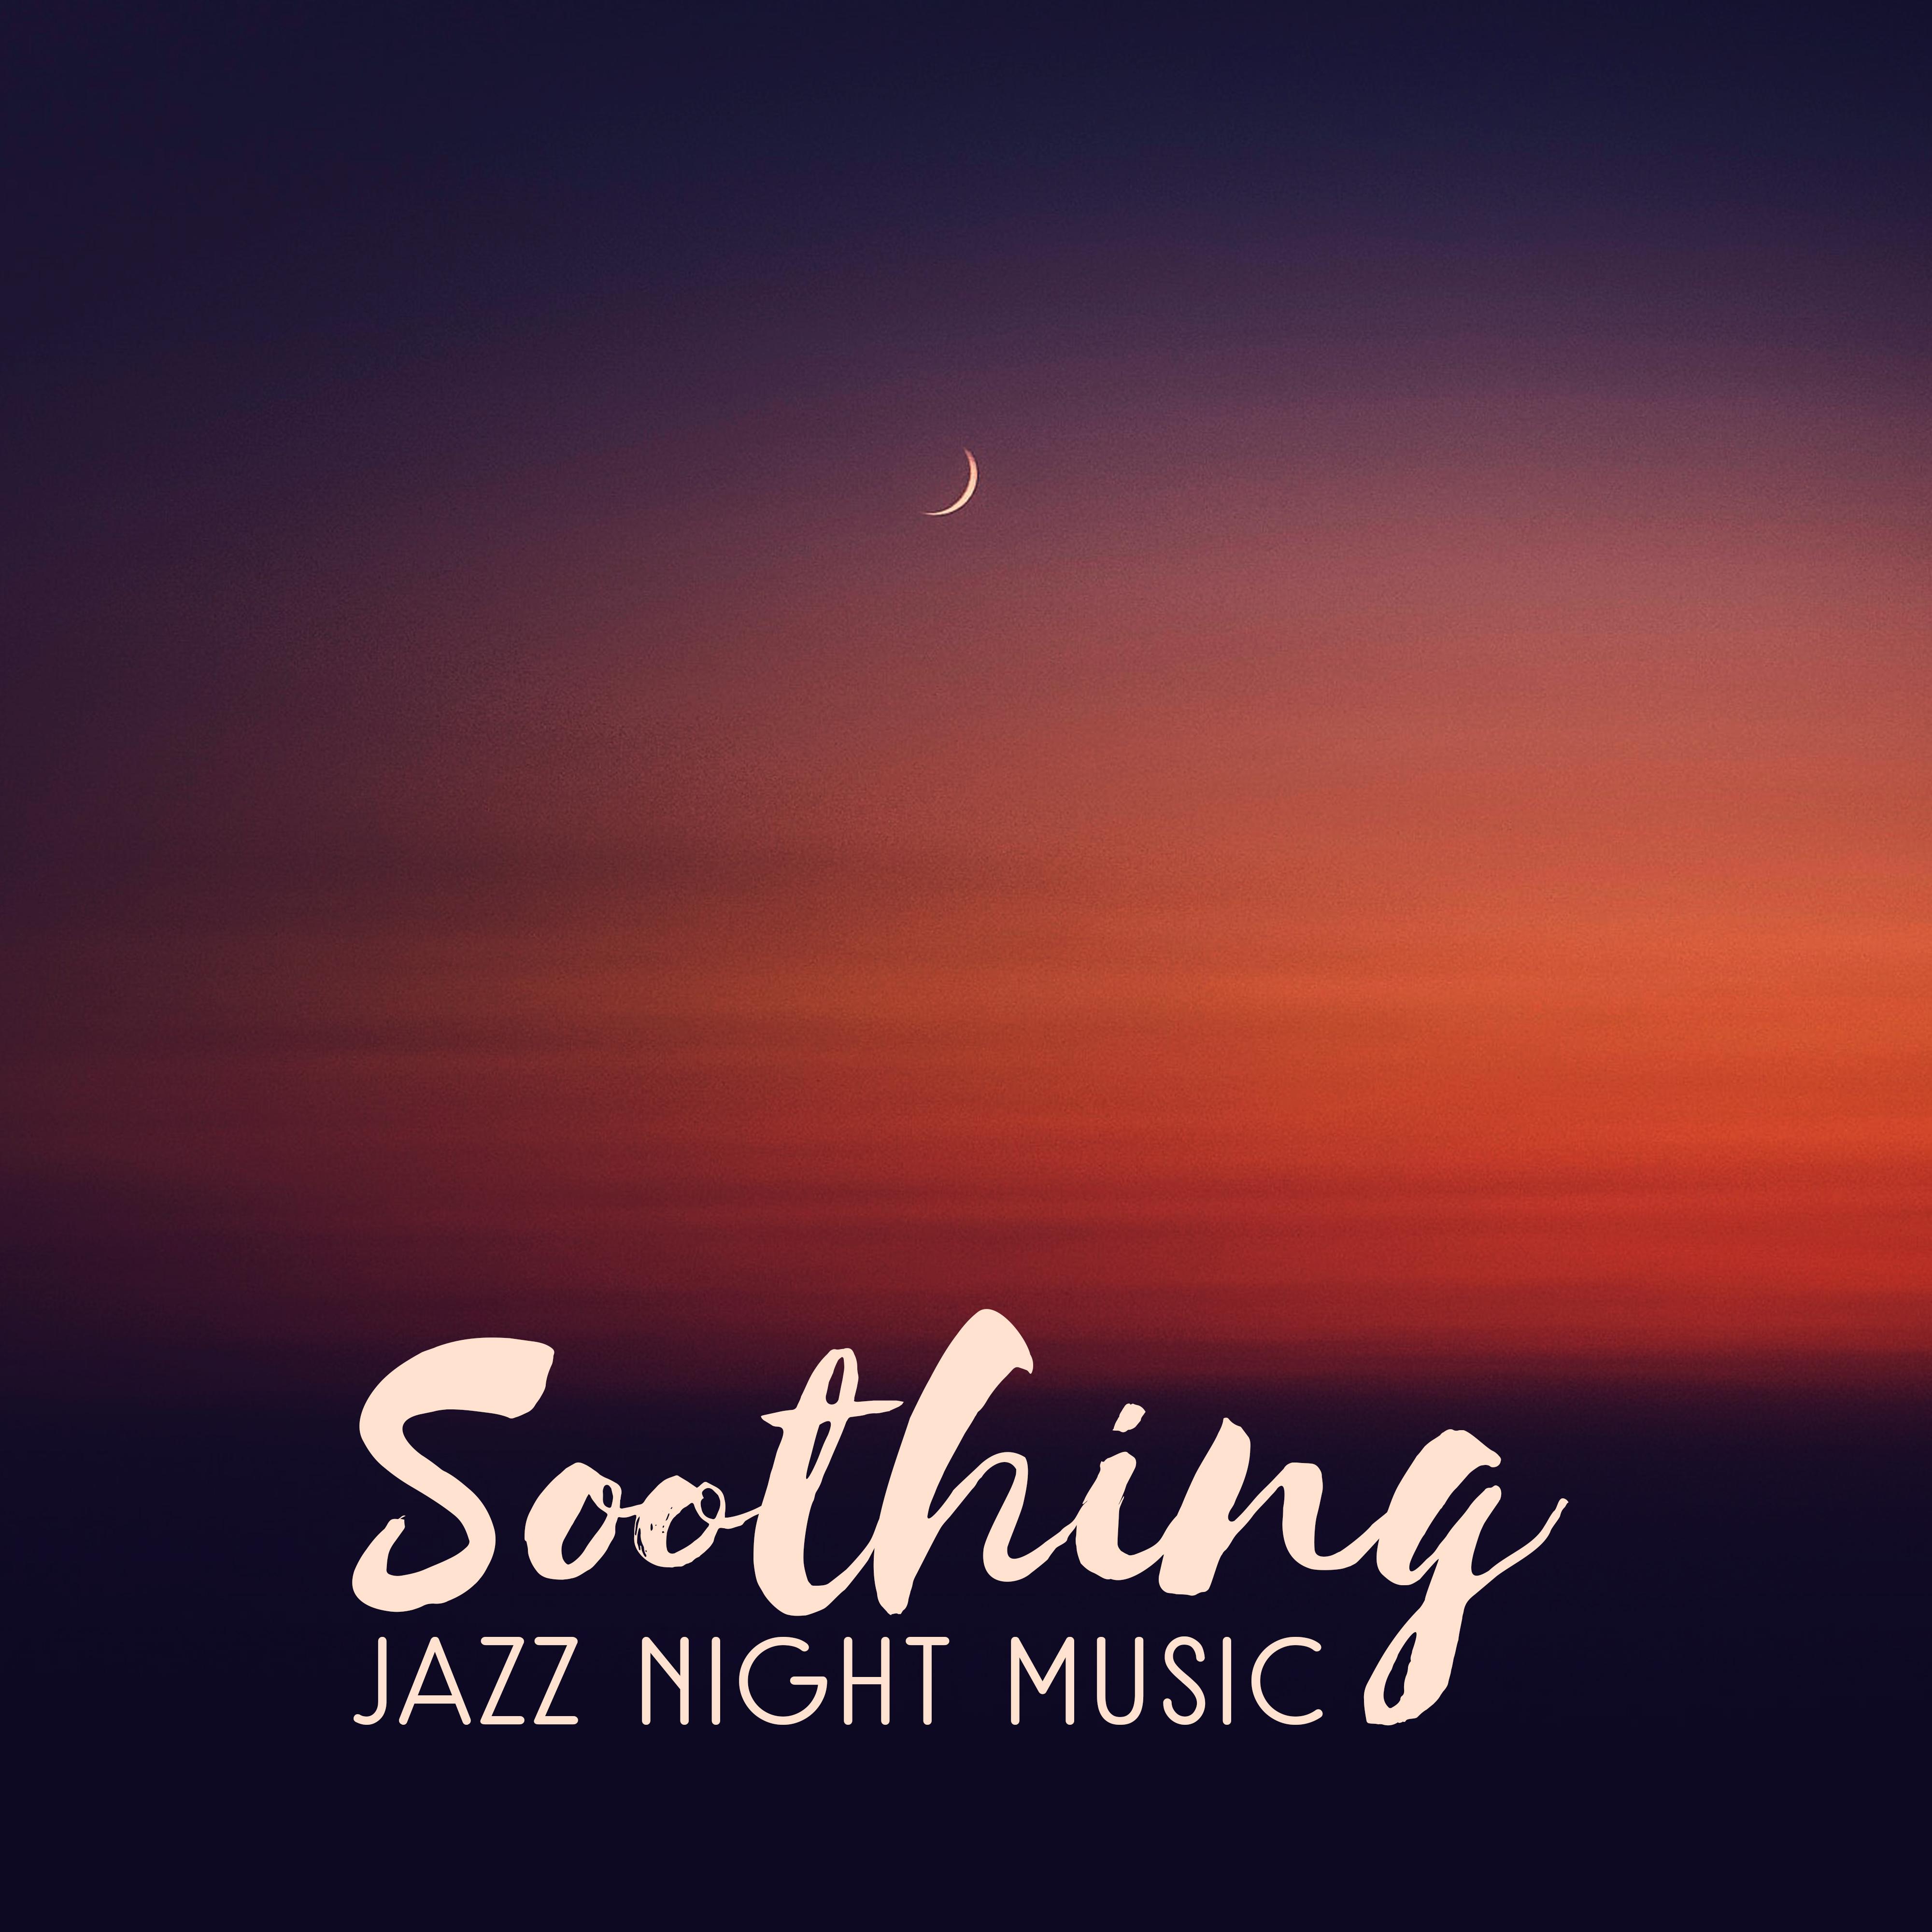 Soothing Jazz Night Music